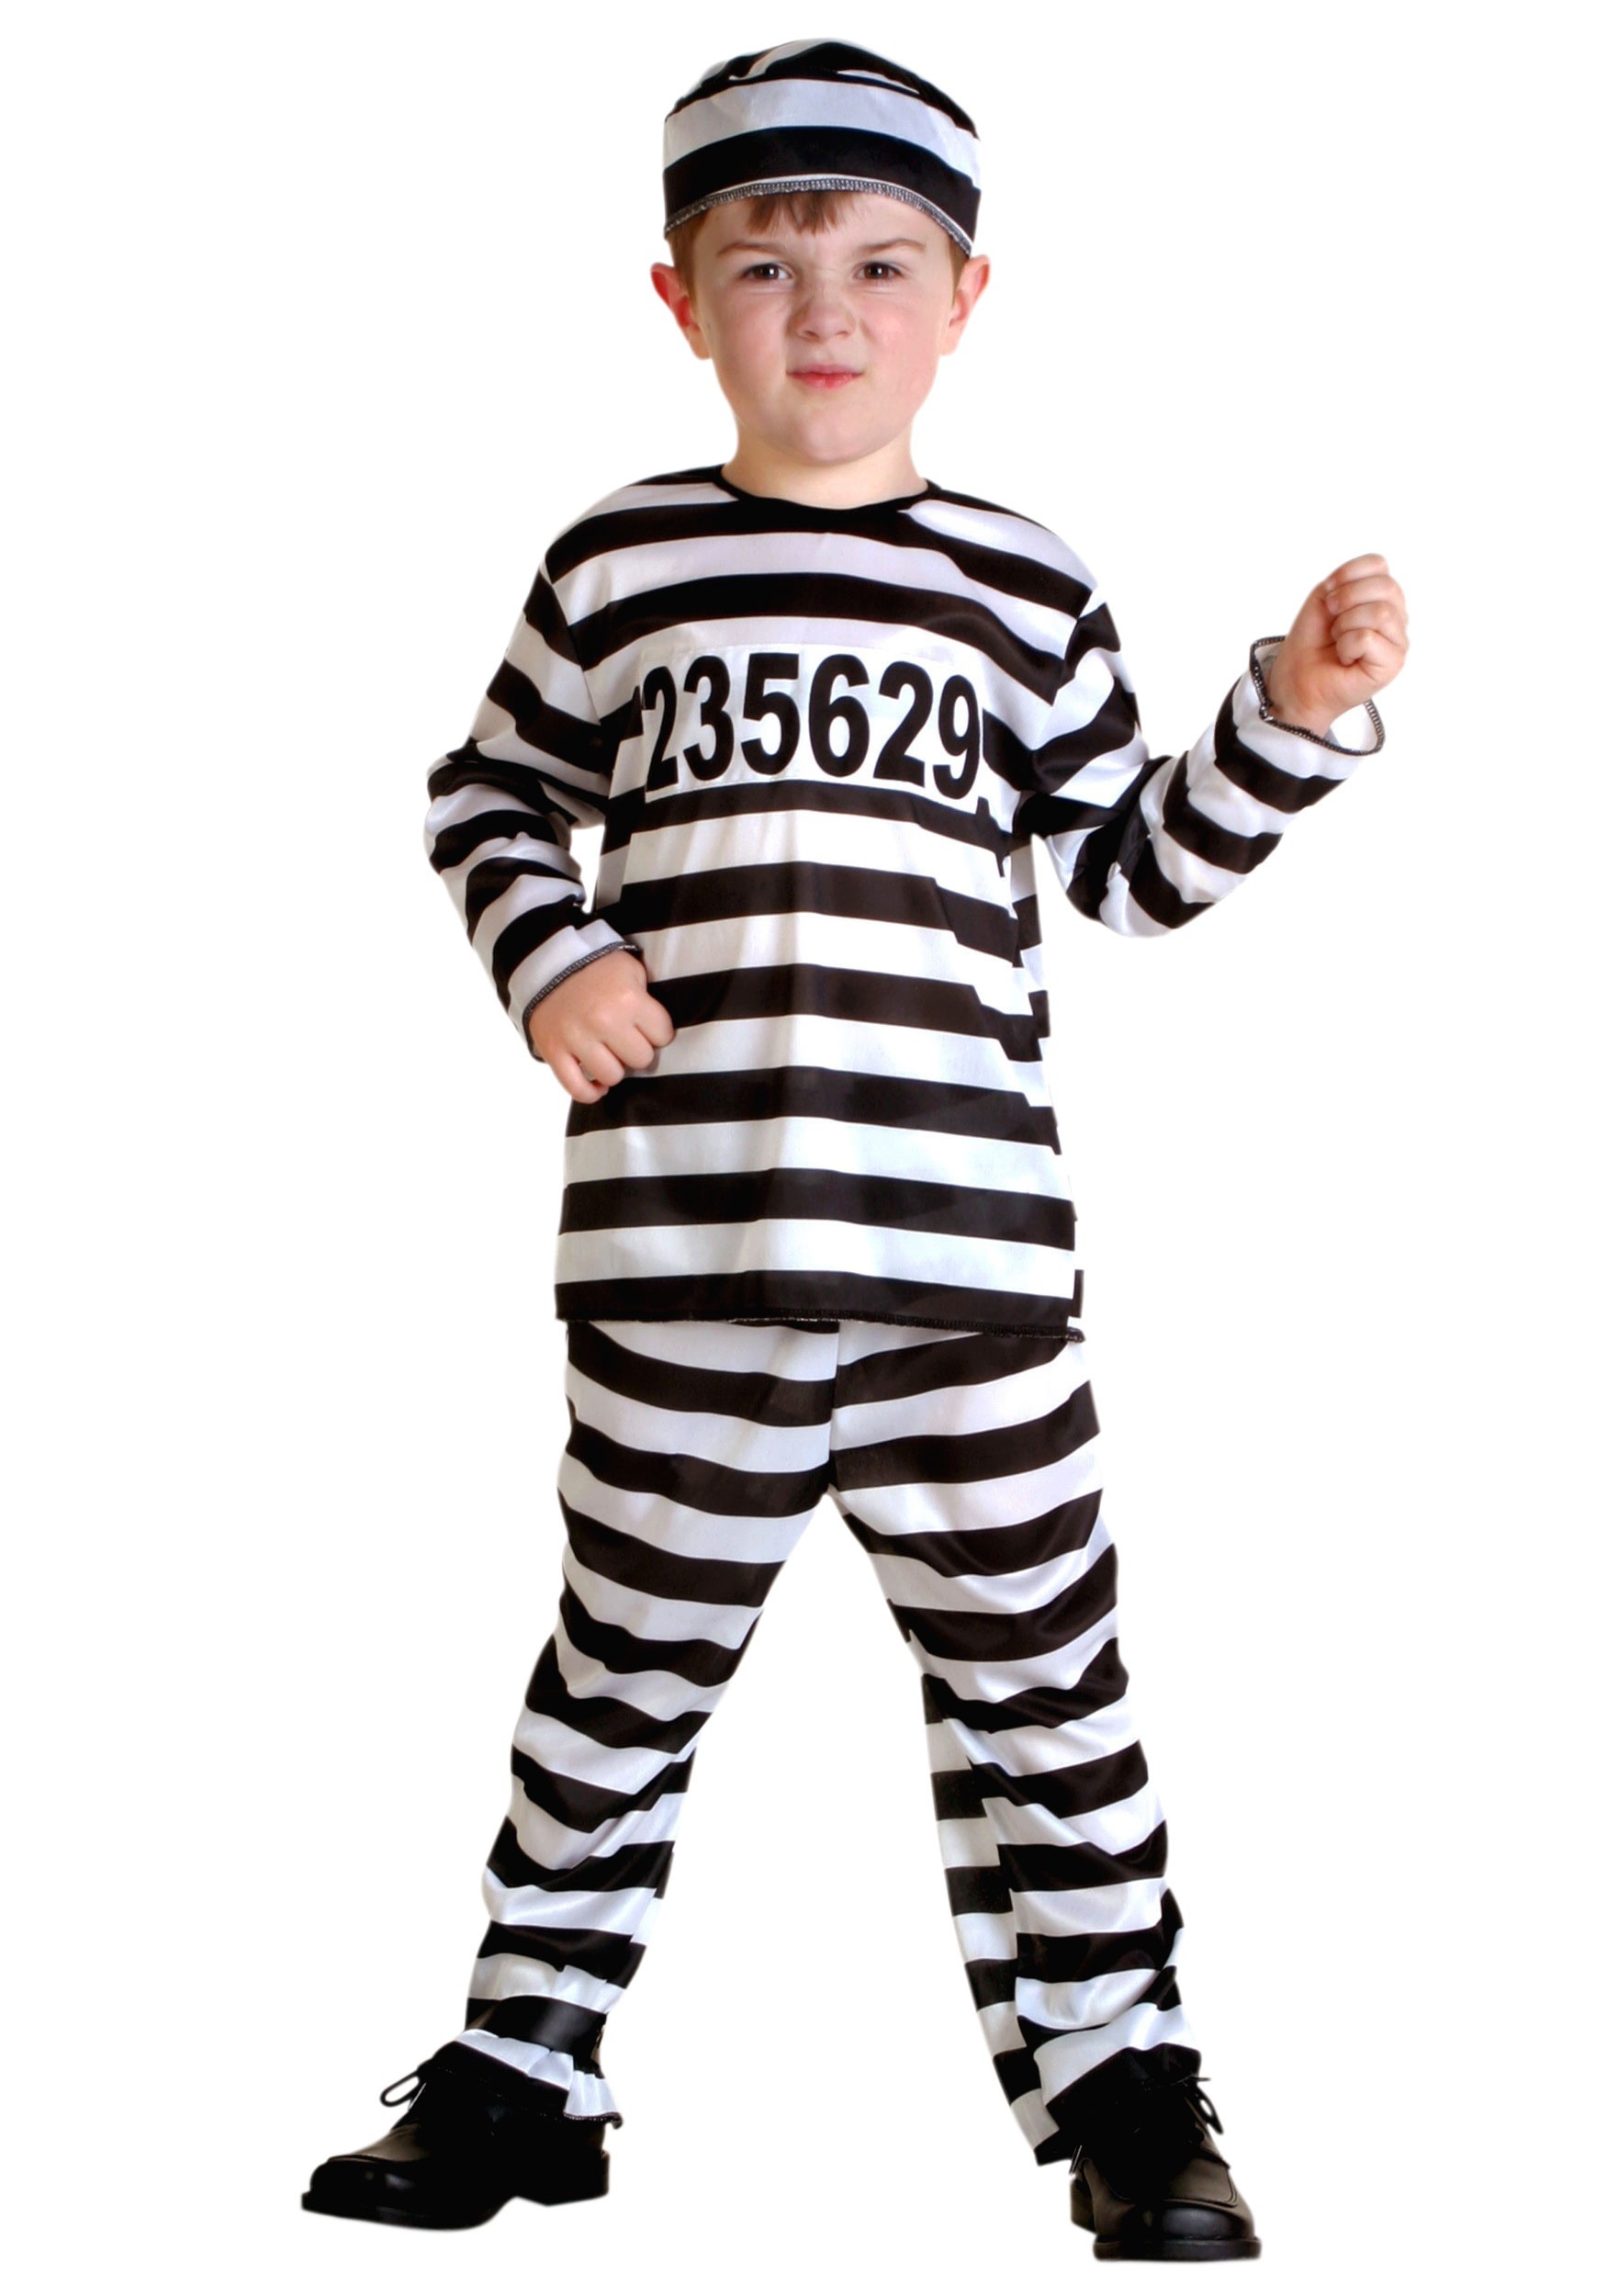 Striped Prisoner Costume for Toddlers | Jailbird Costume for Kids